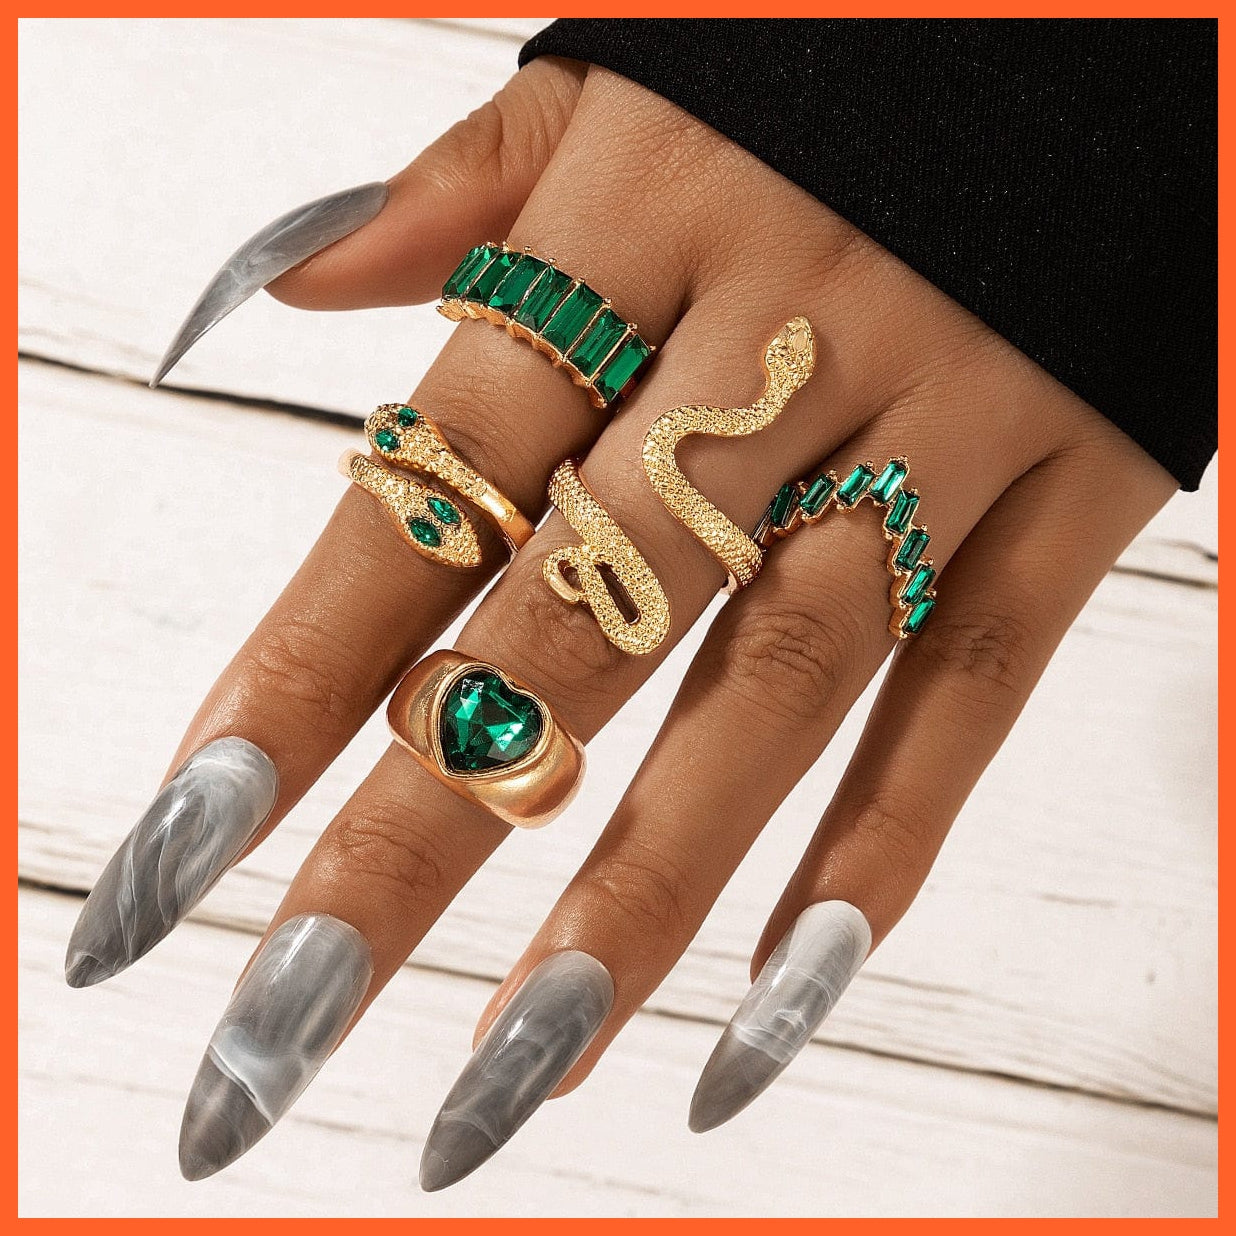 whatagift.uk Resizable / heart ring Adjustable Gothic Finger Snake Ring For Women